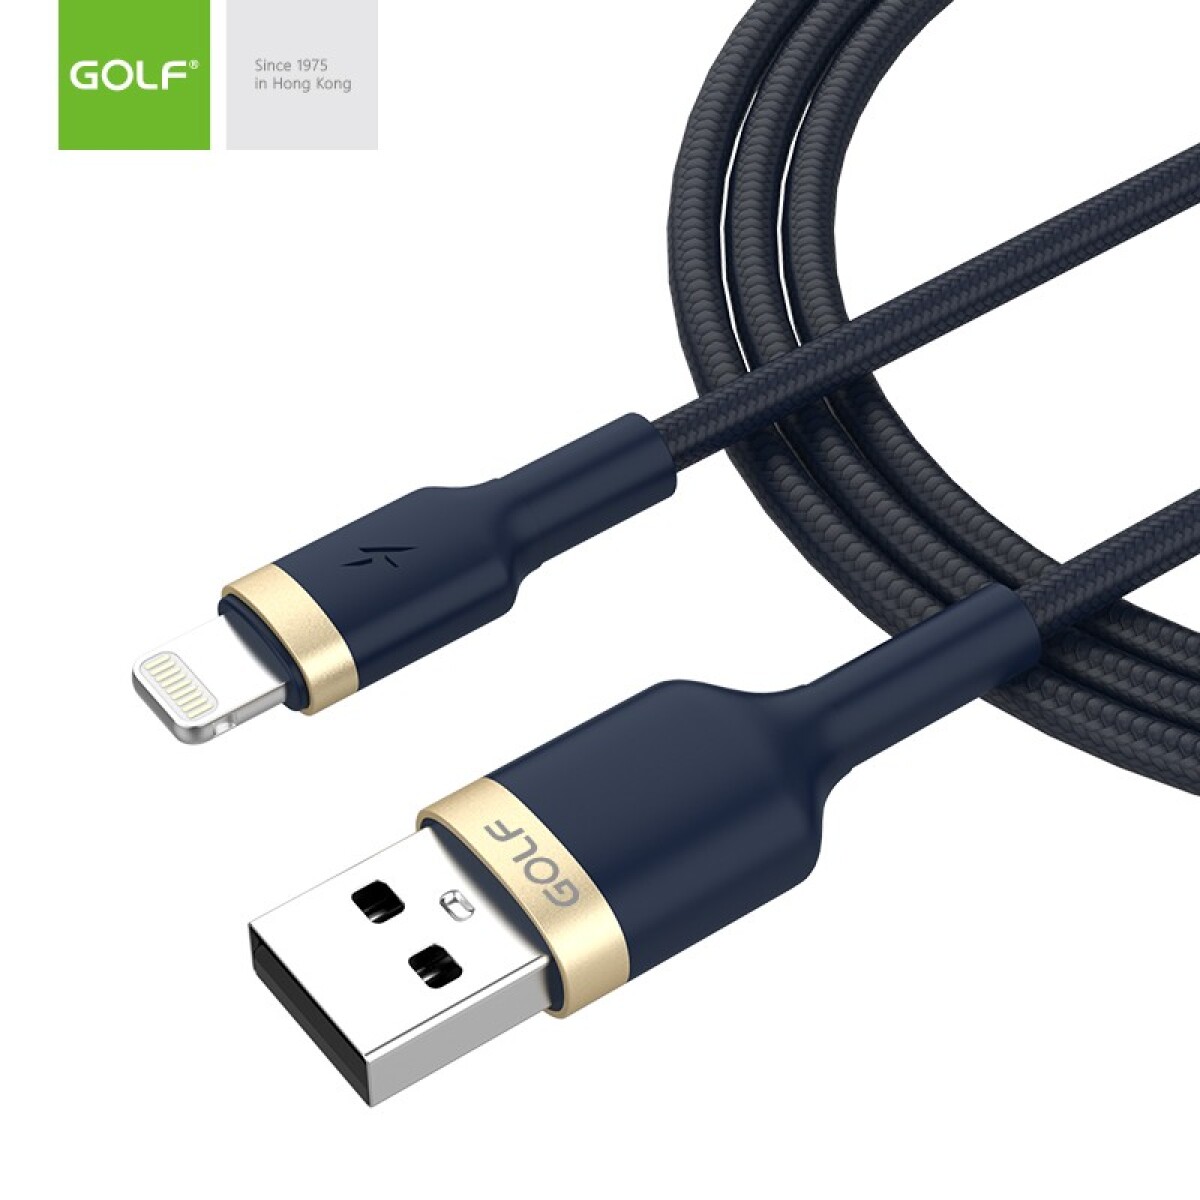 Cable Iphone Compatible Aprobado 1 metro Golf - Azul Petróleo 